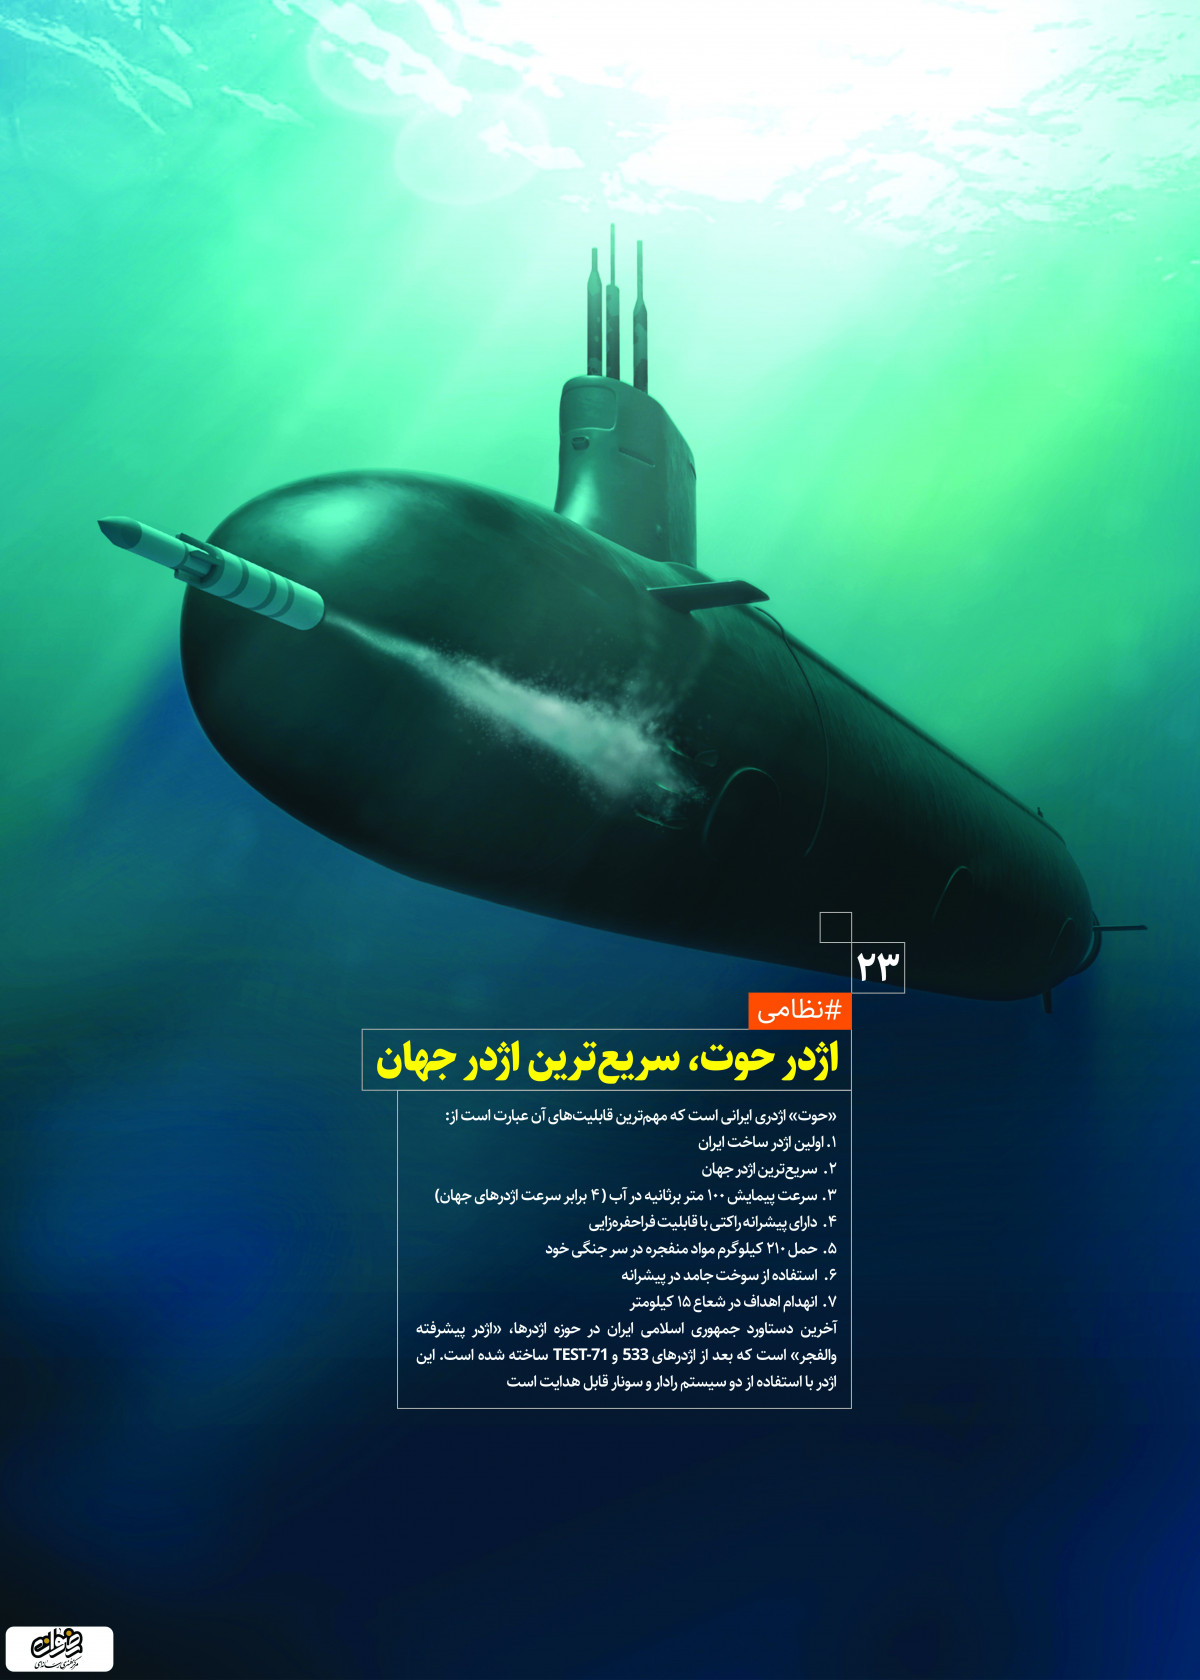 پوستر : دستاوردهای انقلاب اسلامی اژدرحوت سریع ترین اژدر جهان